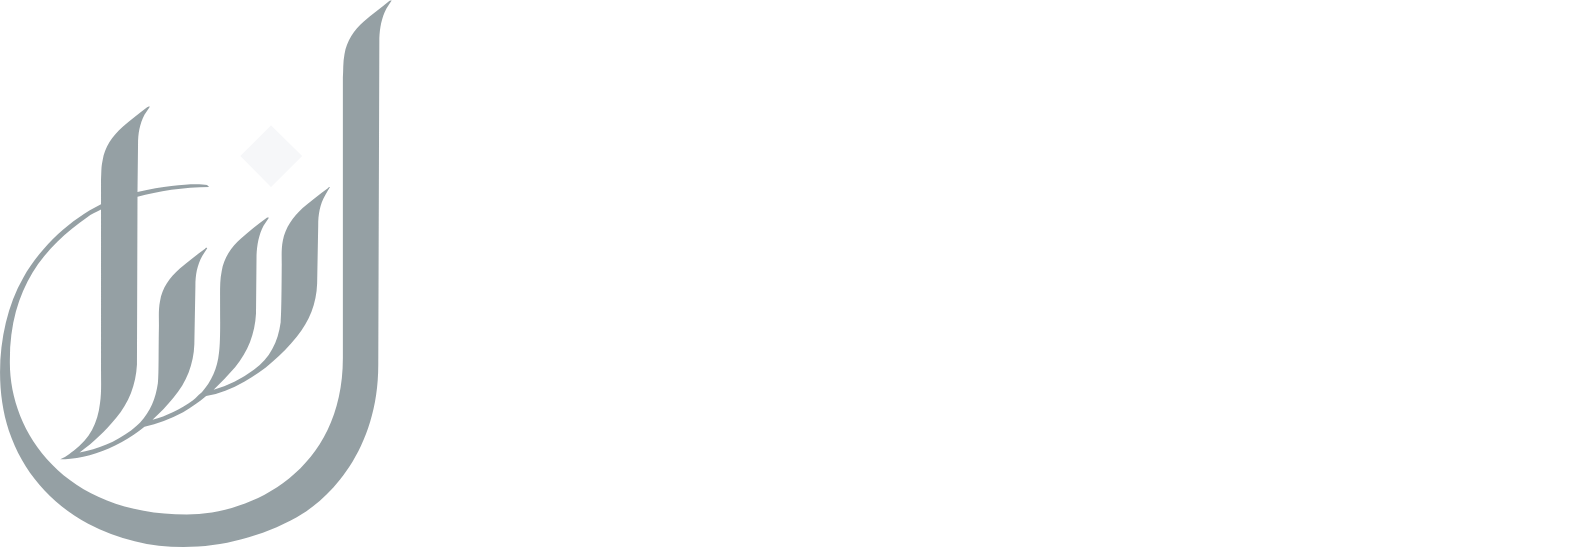 Lesha Bank logo large for dark backgrounds (transparent PNG)